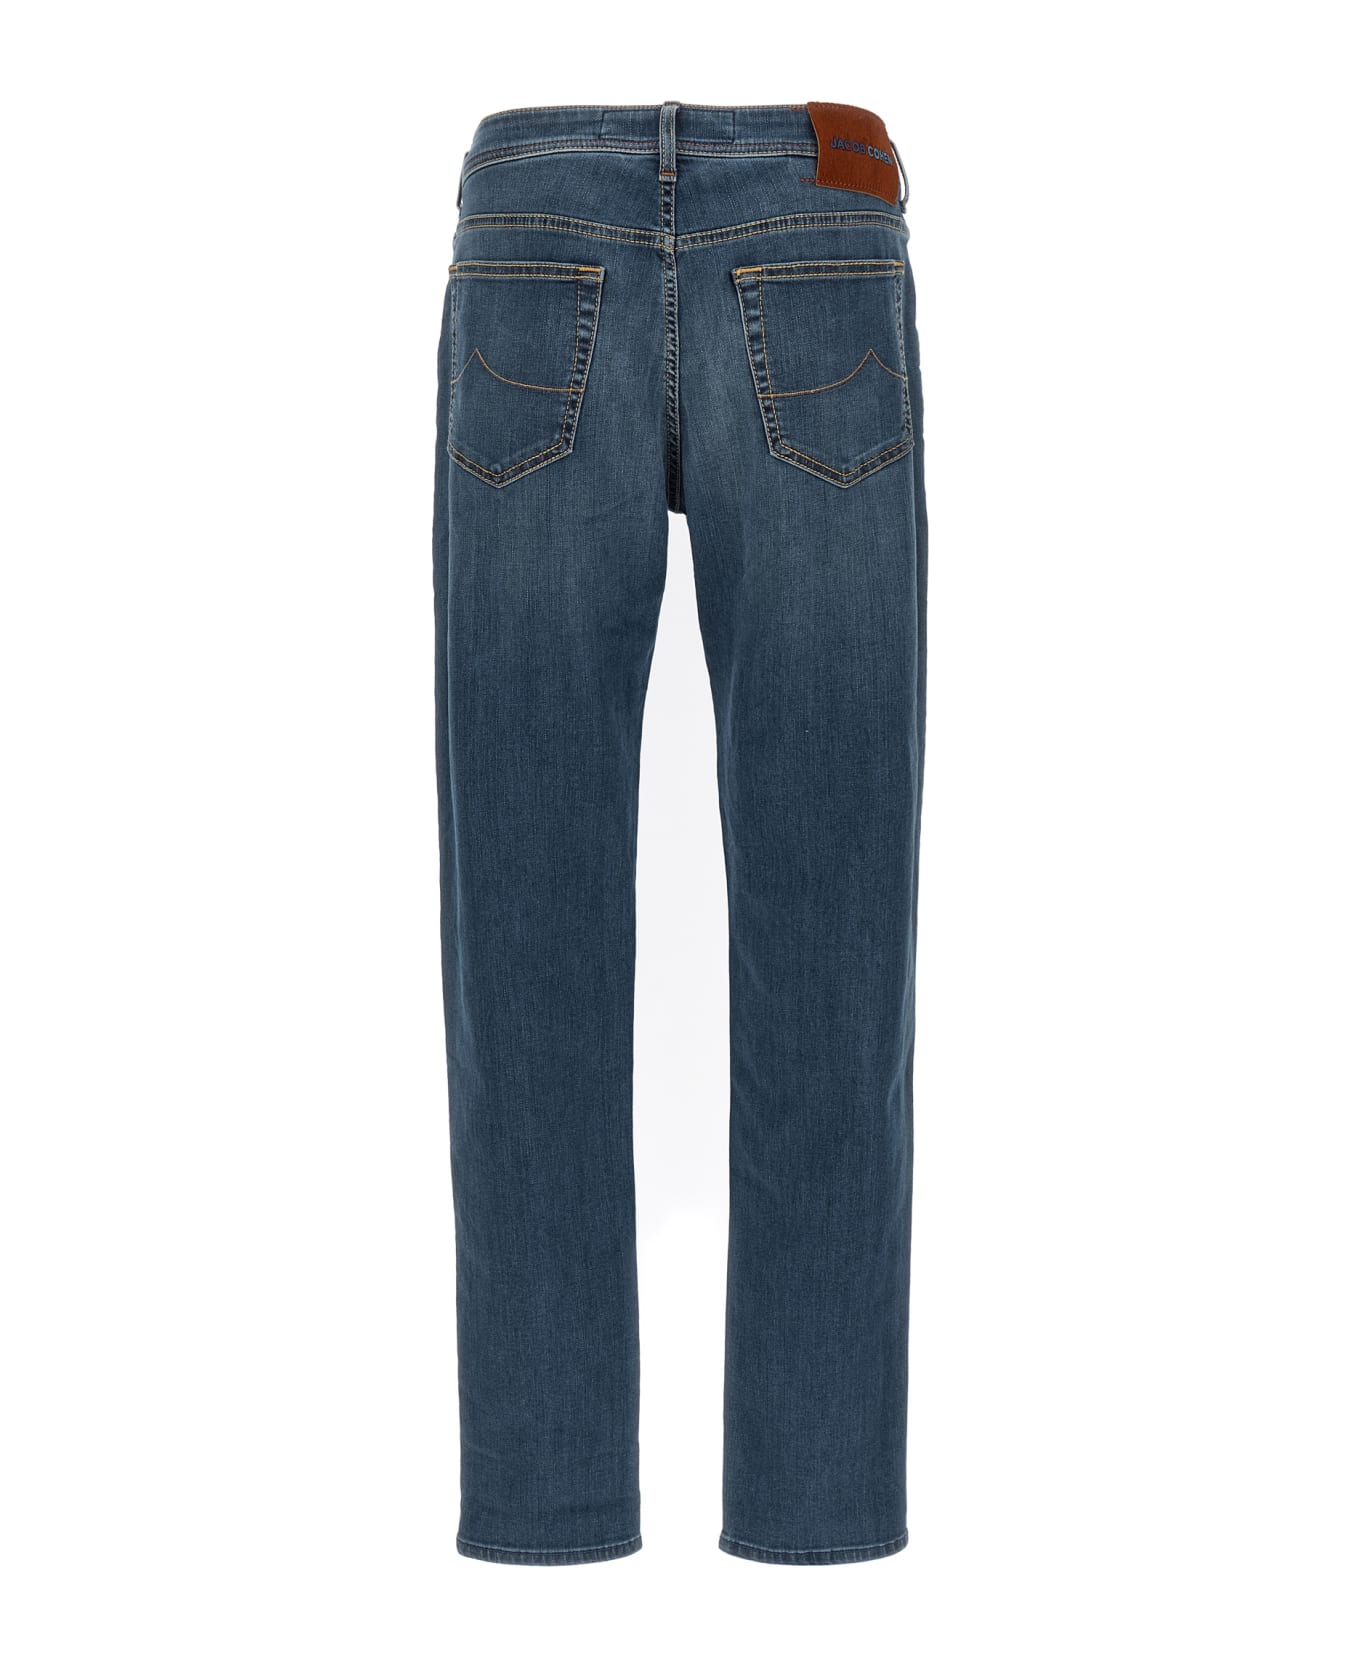 Jacob Cohen 'bard' Jeans - Blue